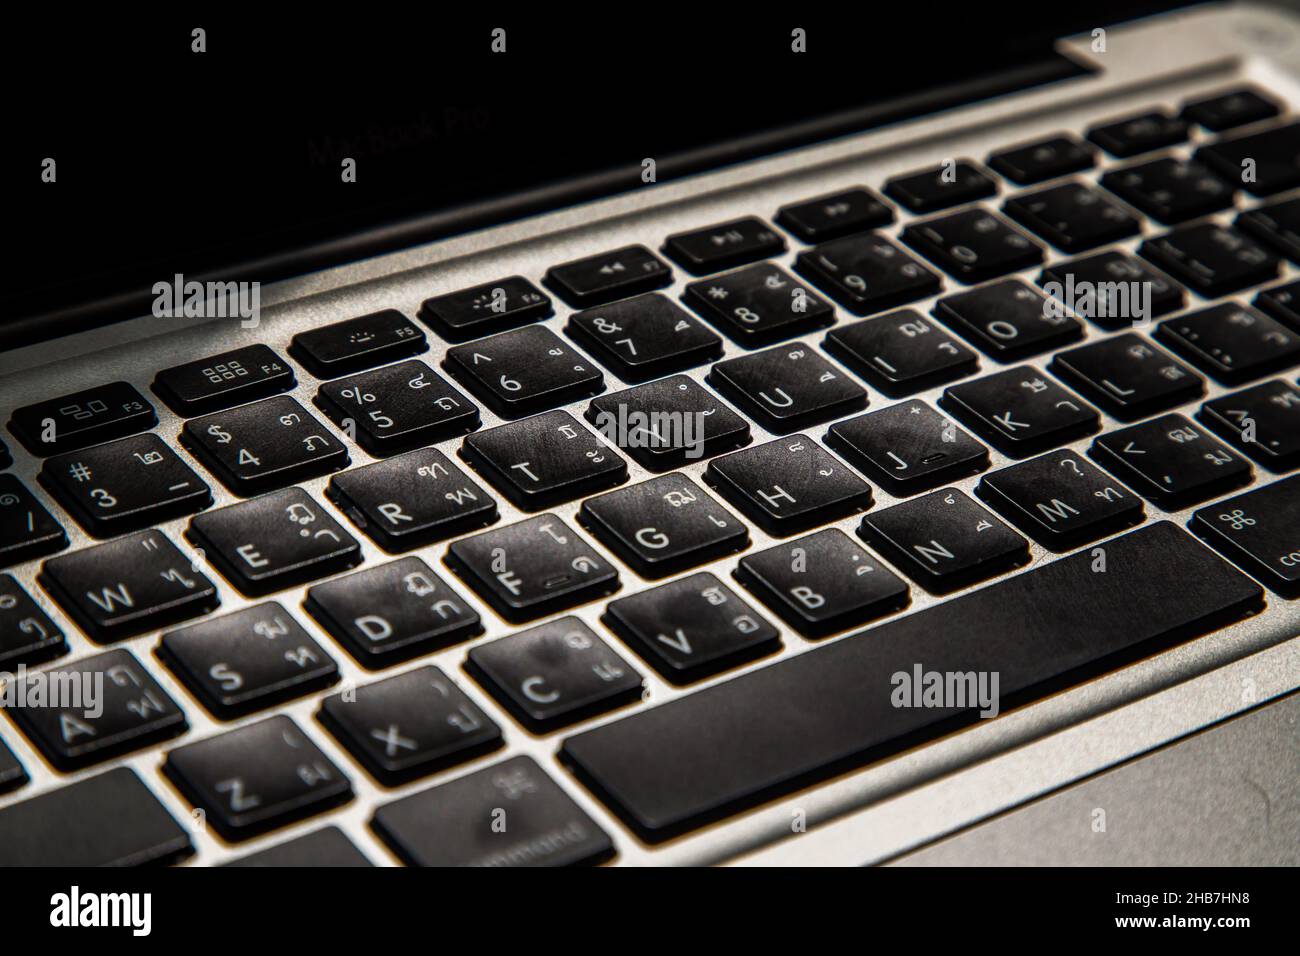 Vue détaillée d'un clavier d'ordinateur portable sur les touches avec contraste  élevé et faible profondeur de champ. Clavier de l'ordinateur, mise au point  sélective Photo Stock - Alamy